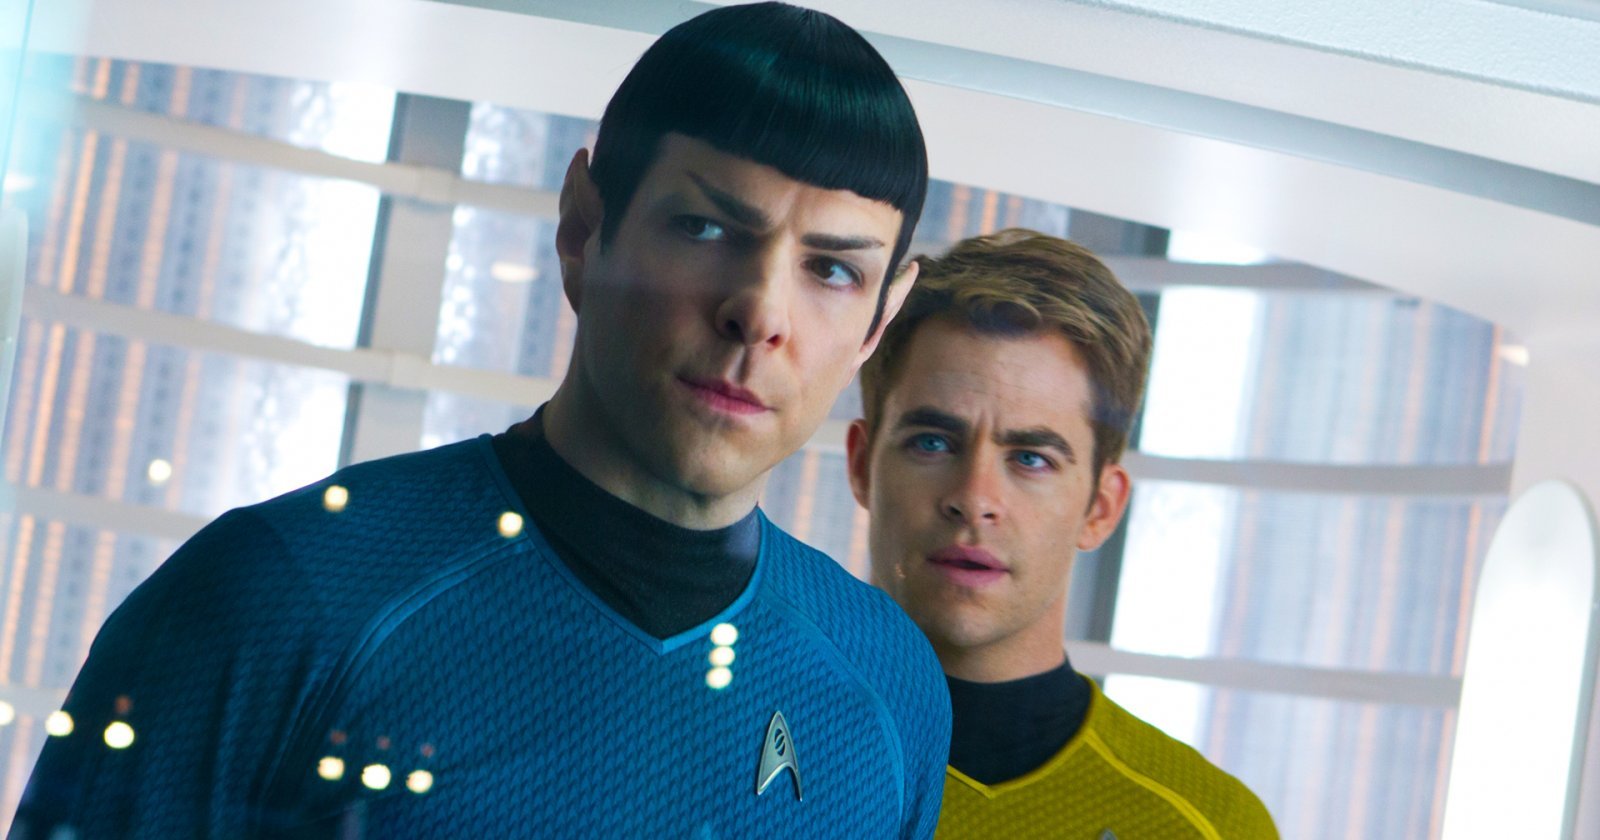 Paramount สั่งเร่งเขียนบท ‘Star Trek 4’ โดยเร็วที่สุด และอาจเป็นการรีบูตแฟรนไชส์อีกครั้ง